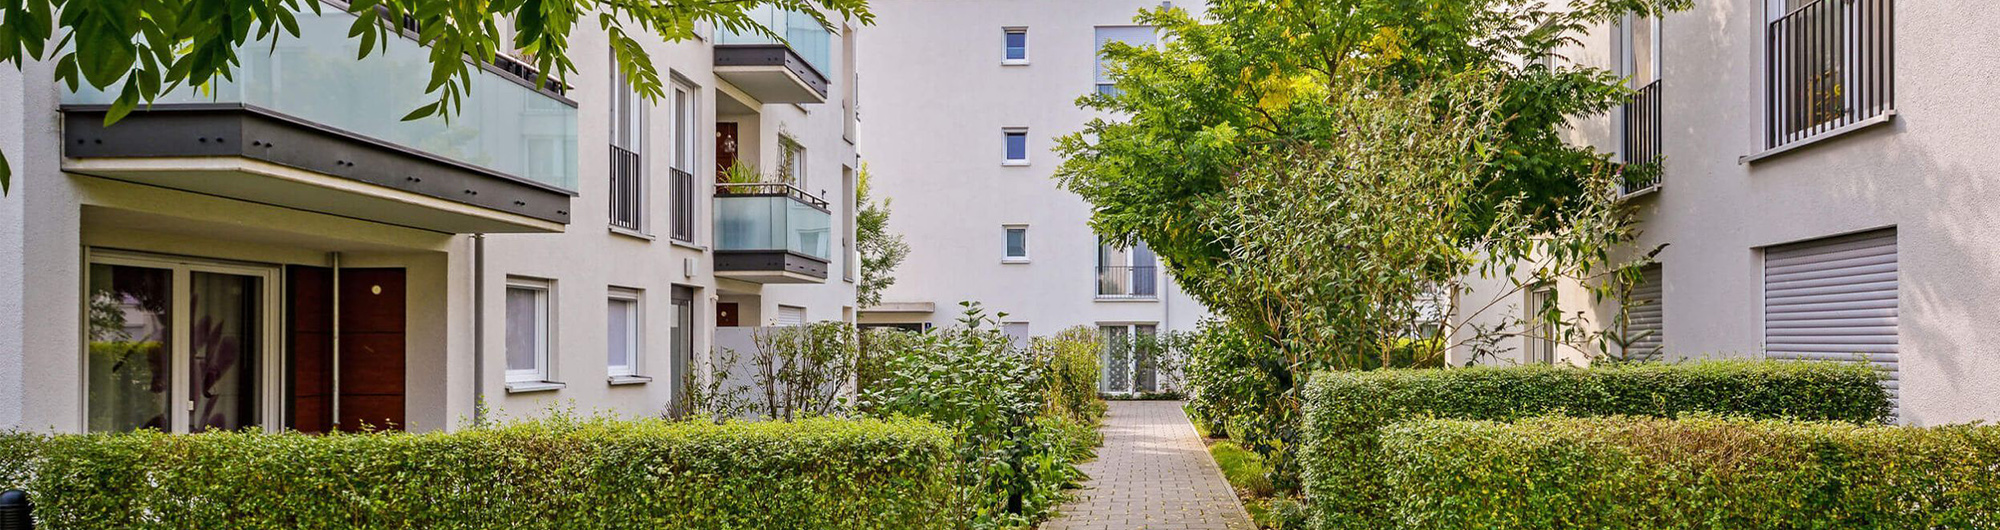 Immobilienmakler Leipzig Umgebung Pisa Immobilien